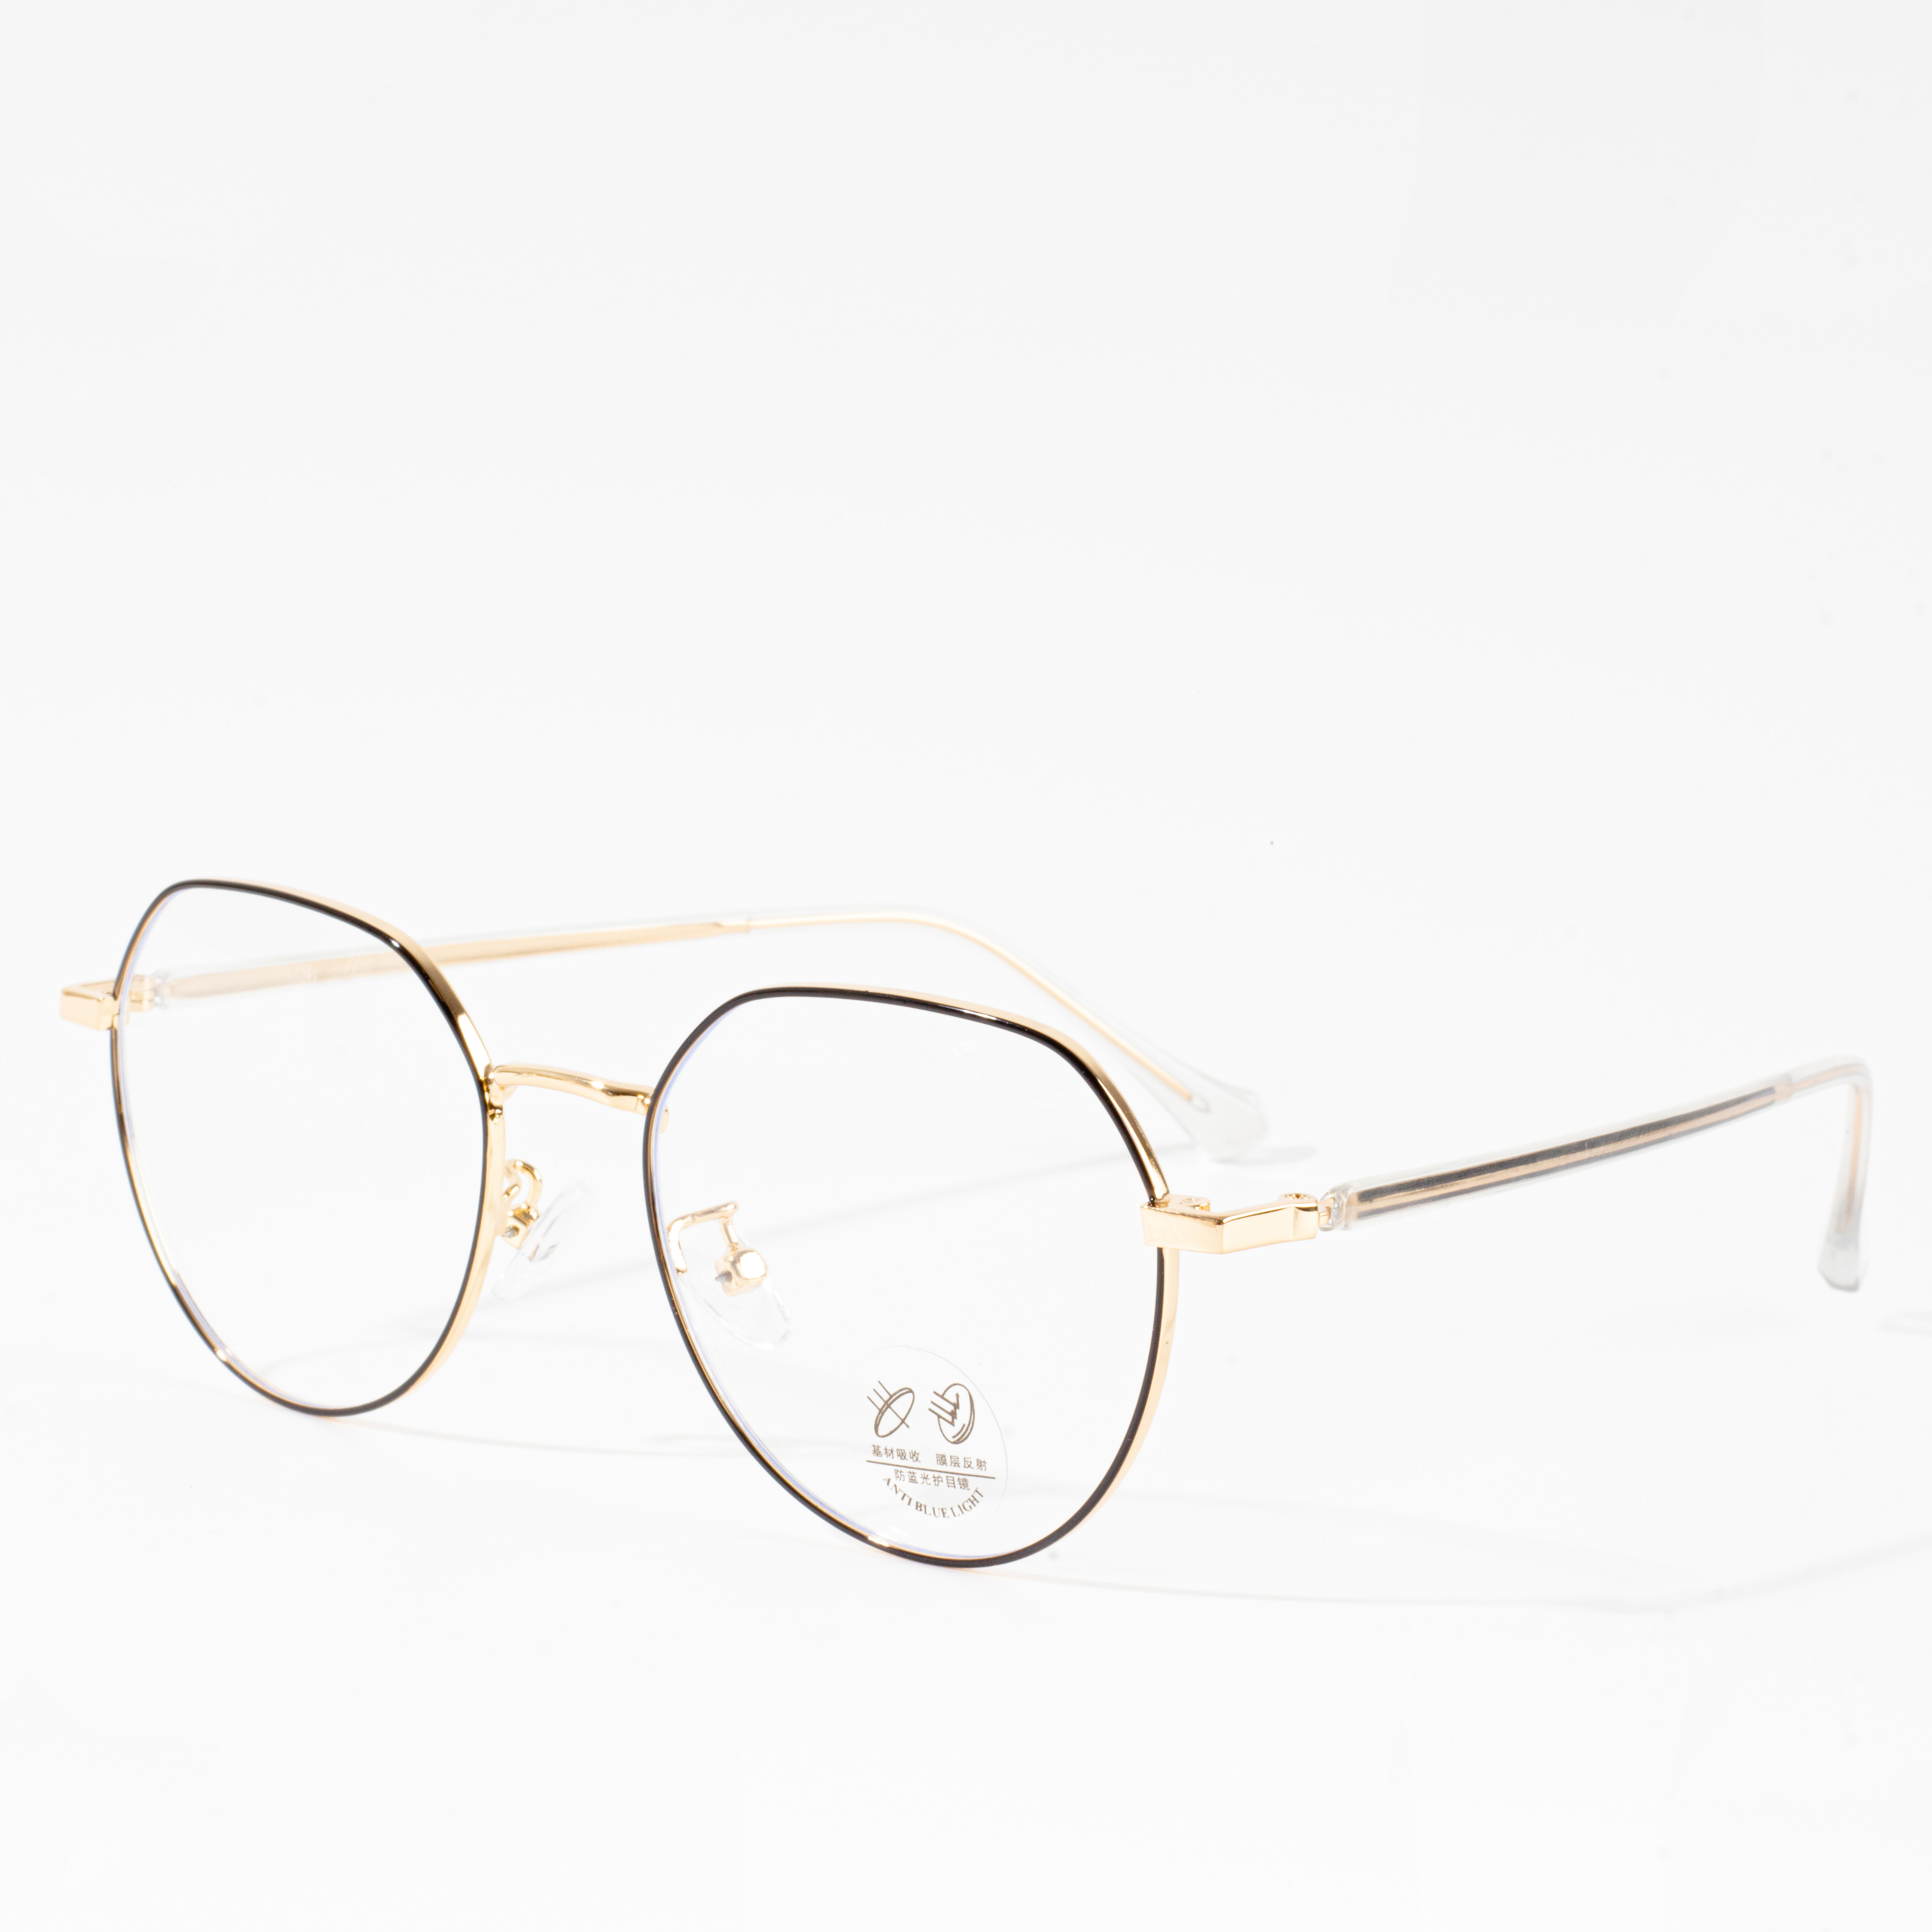 ûntwerper metalen bril frames